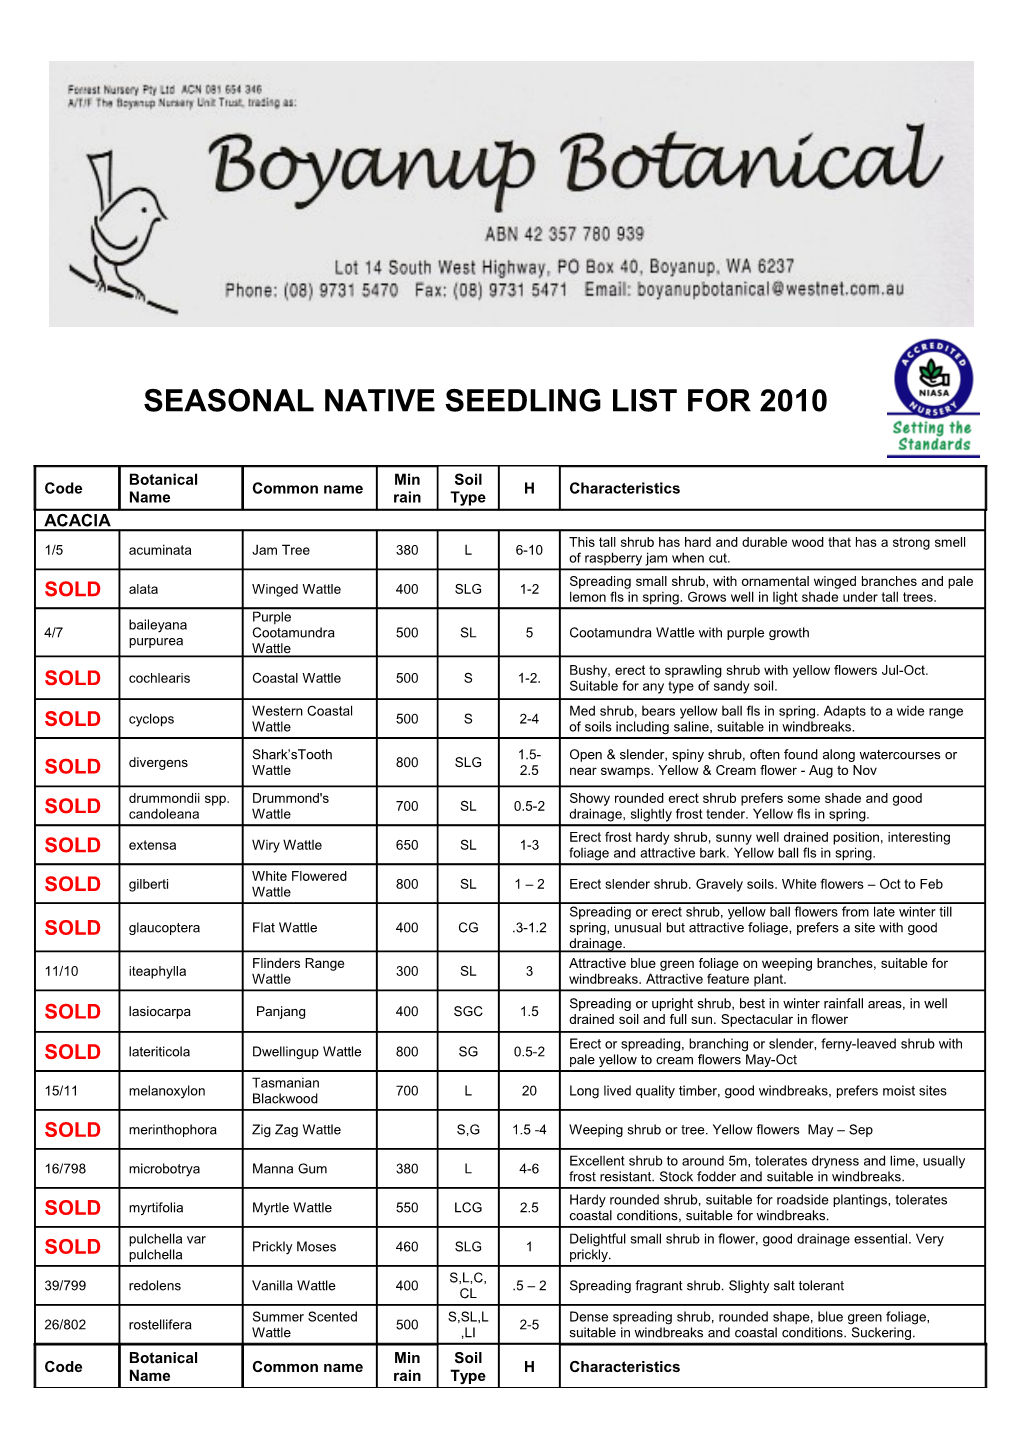 Boyanup Botanical Native Seedling Prices 2010